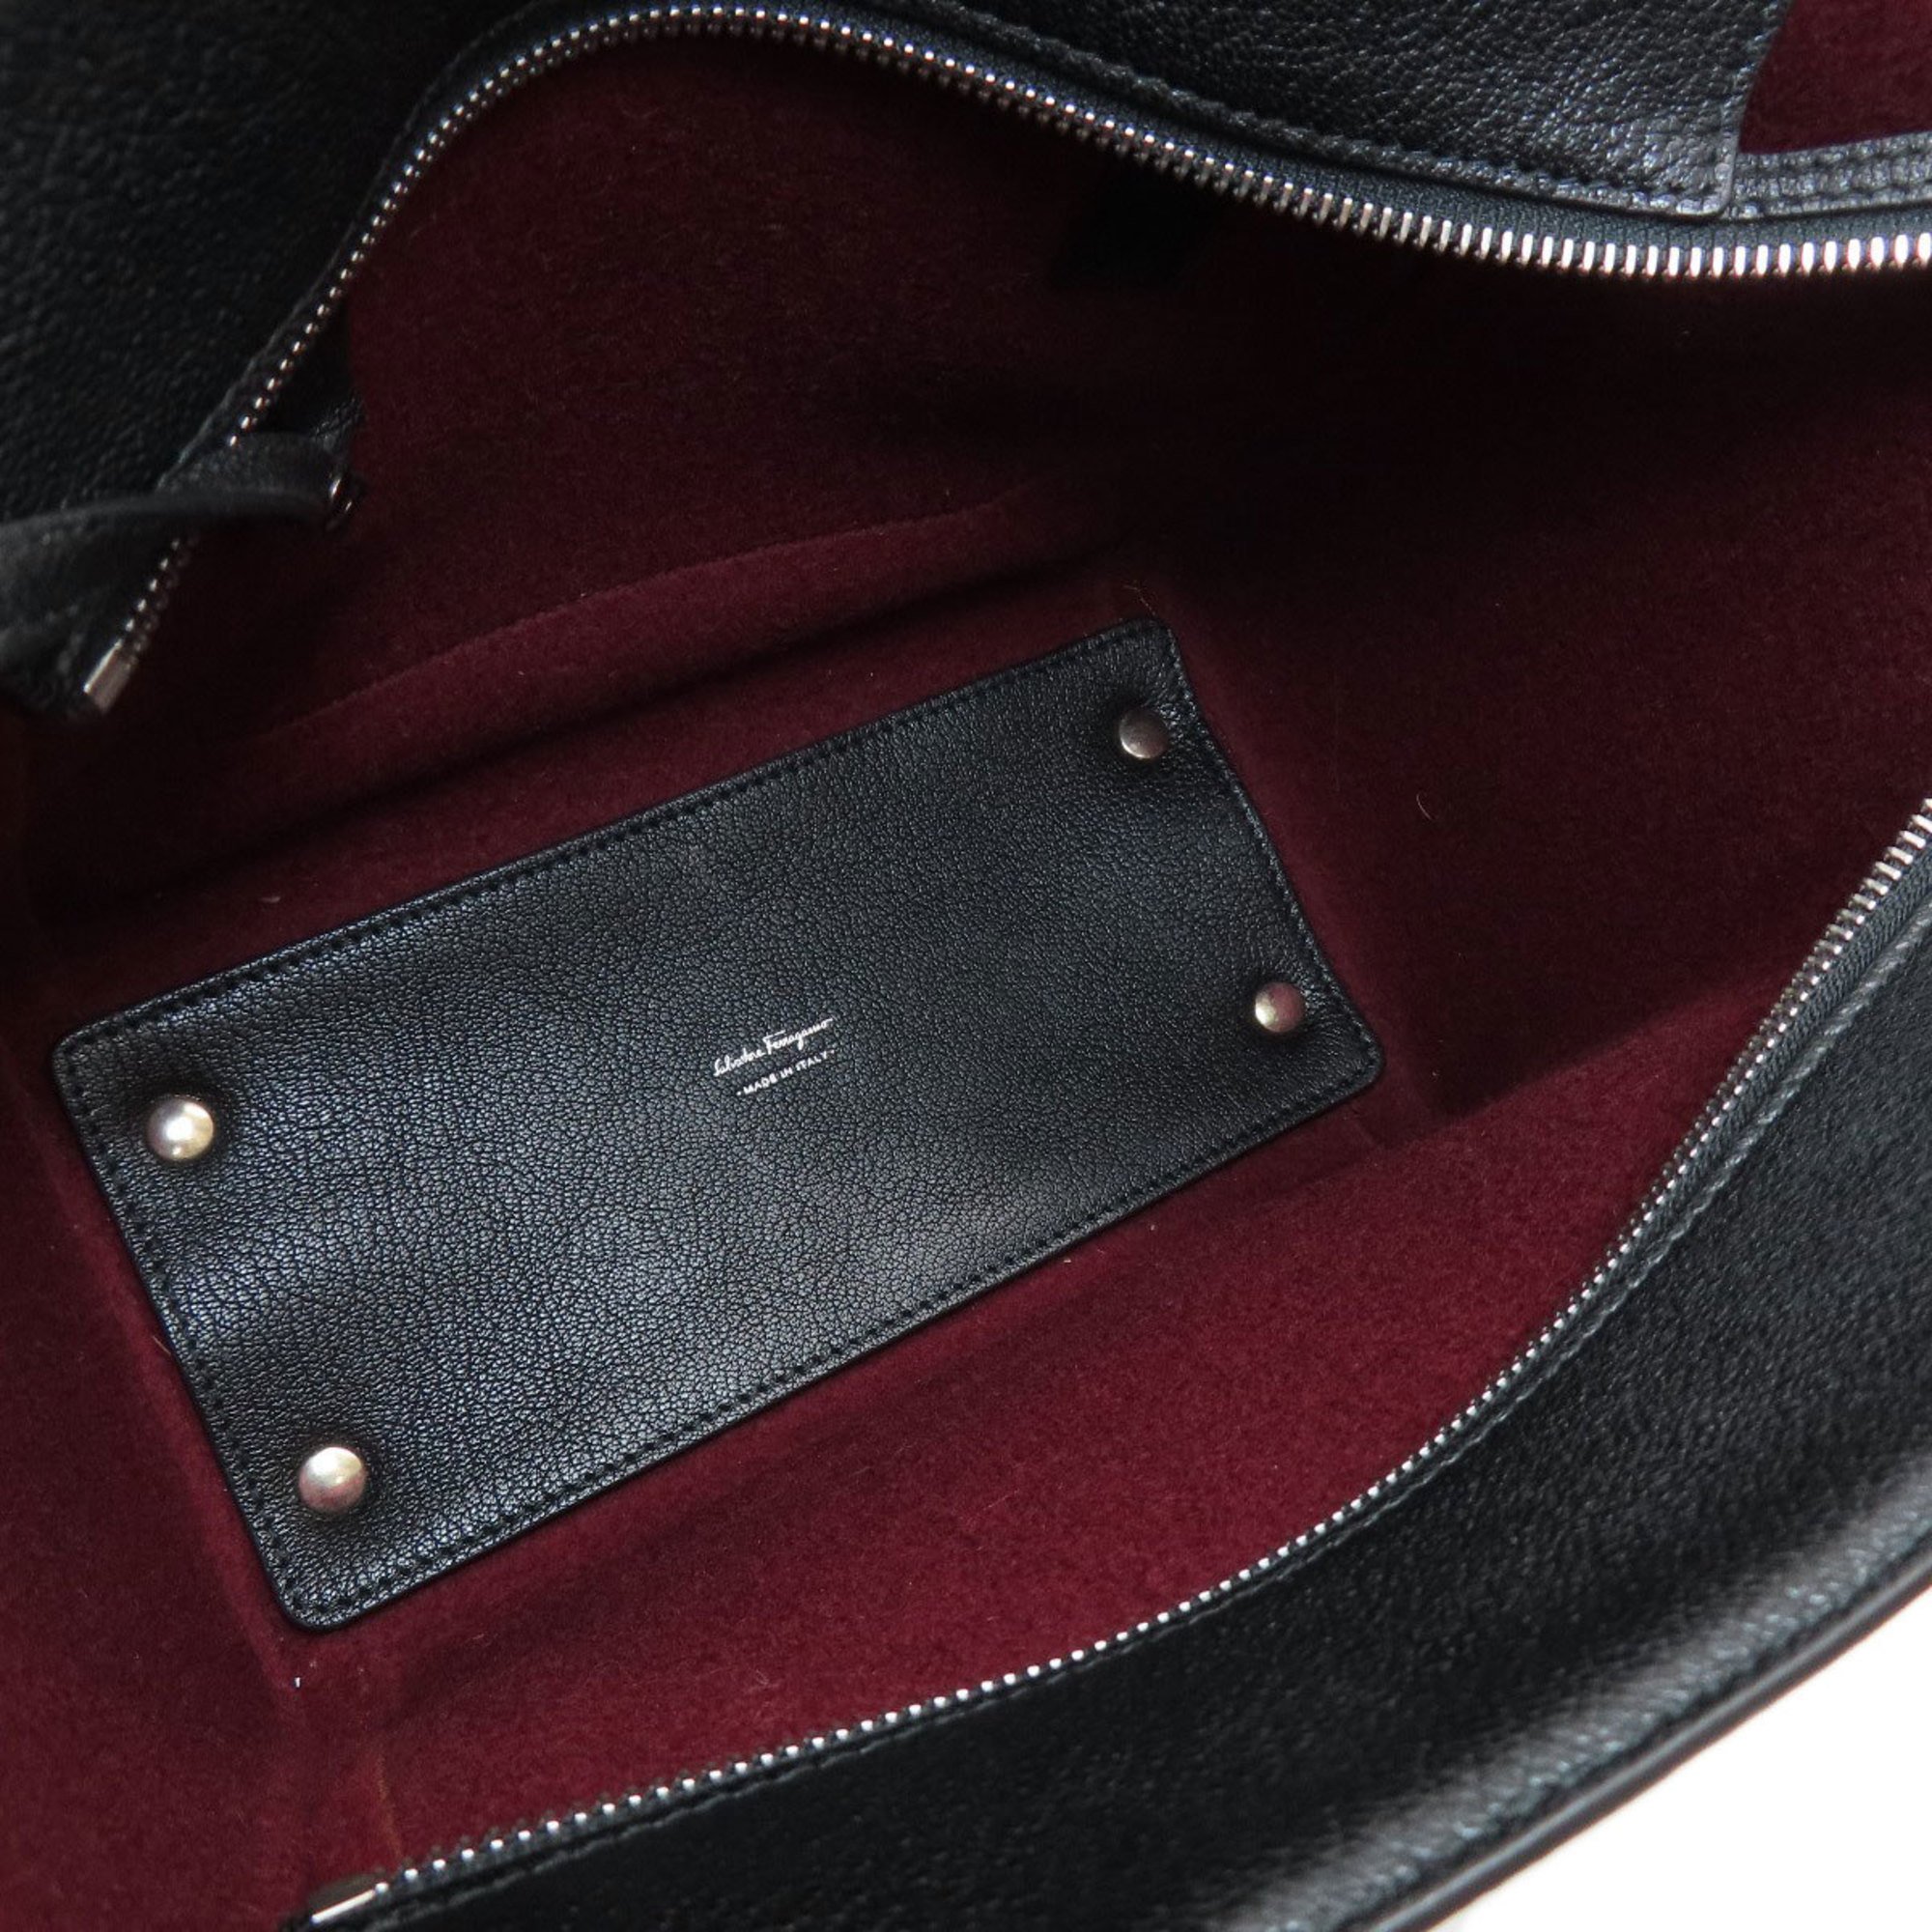 Salvatore Ferragamo handbag felt leather ladies